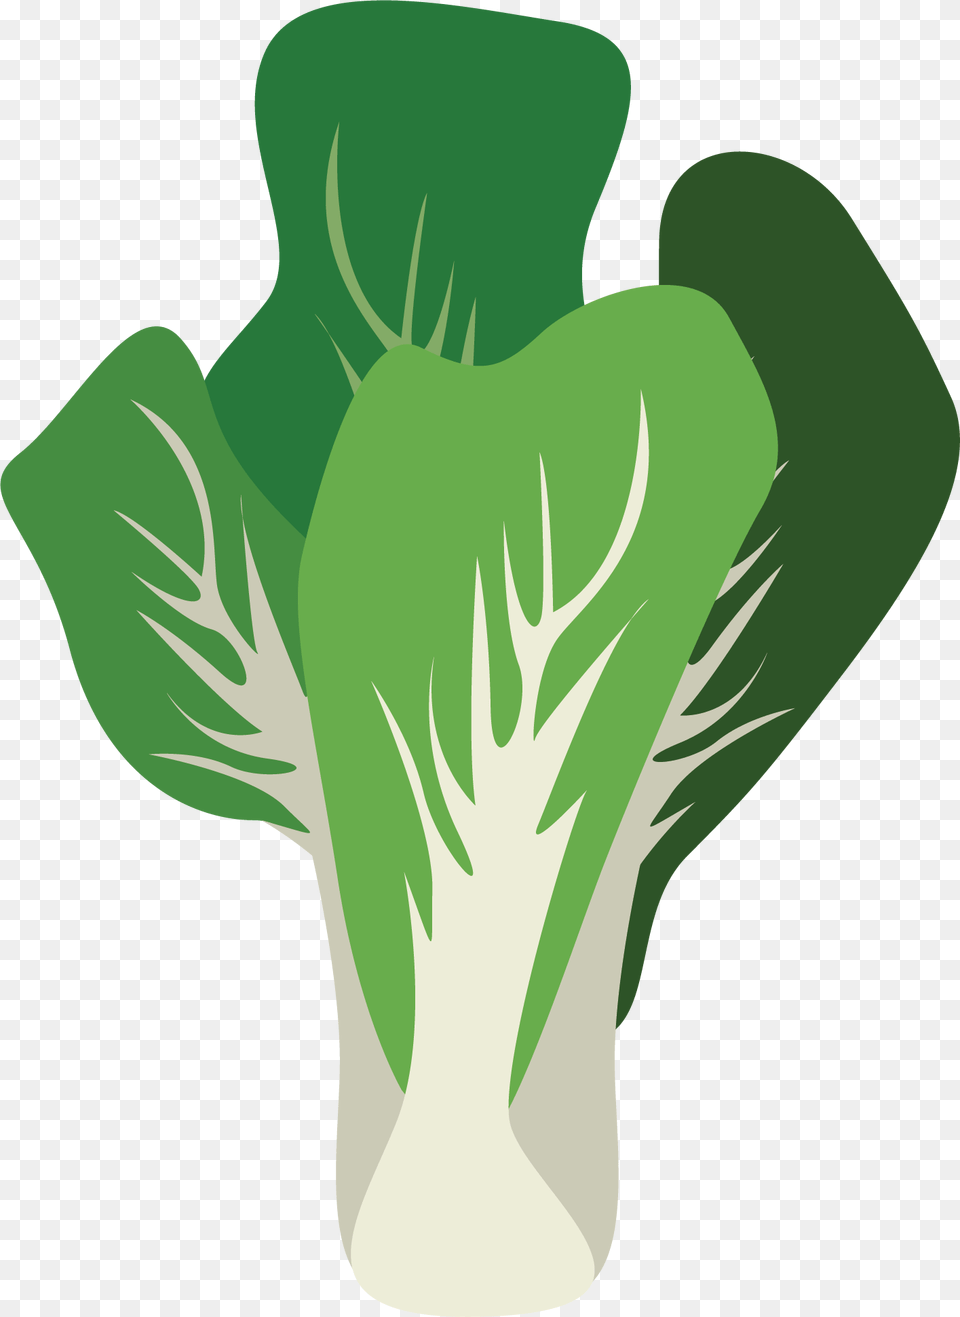 Leaf Vegetable, Produce, Food, Leafy Green Vegetable, Plant Free Png Download